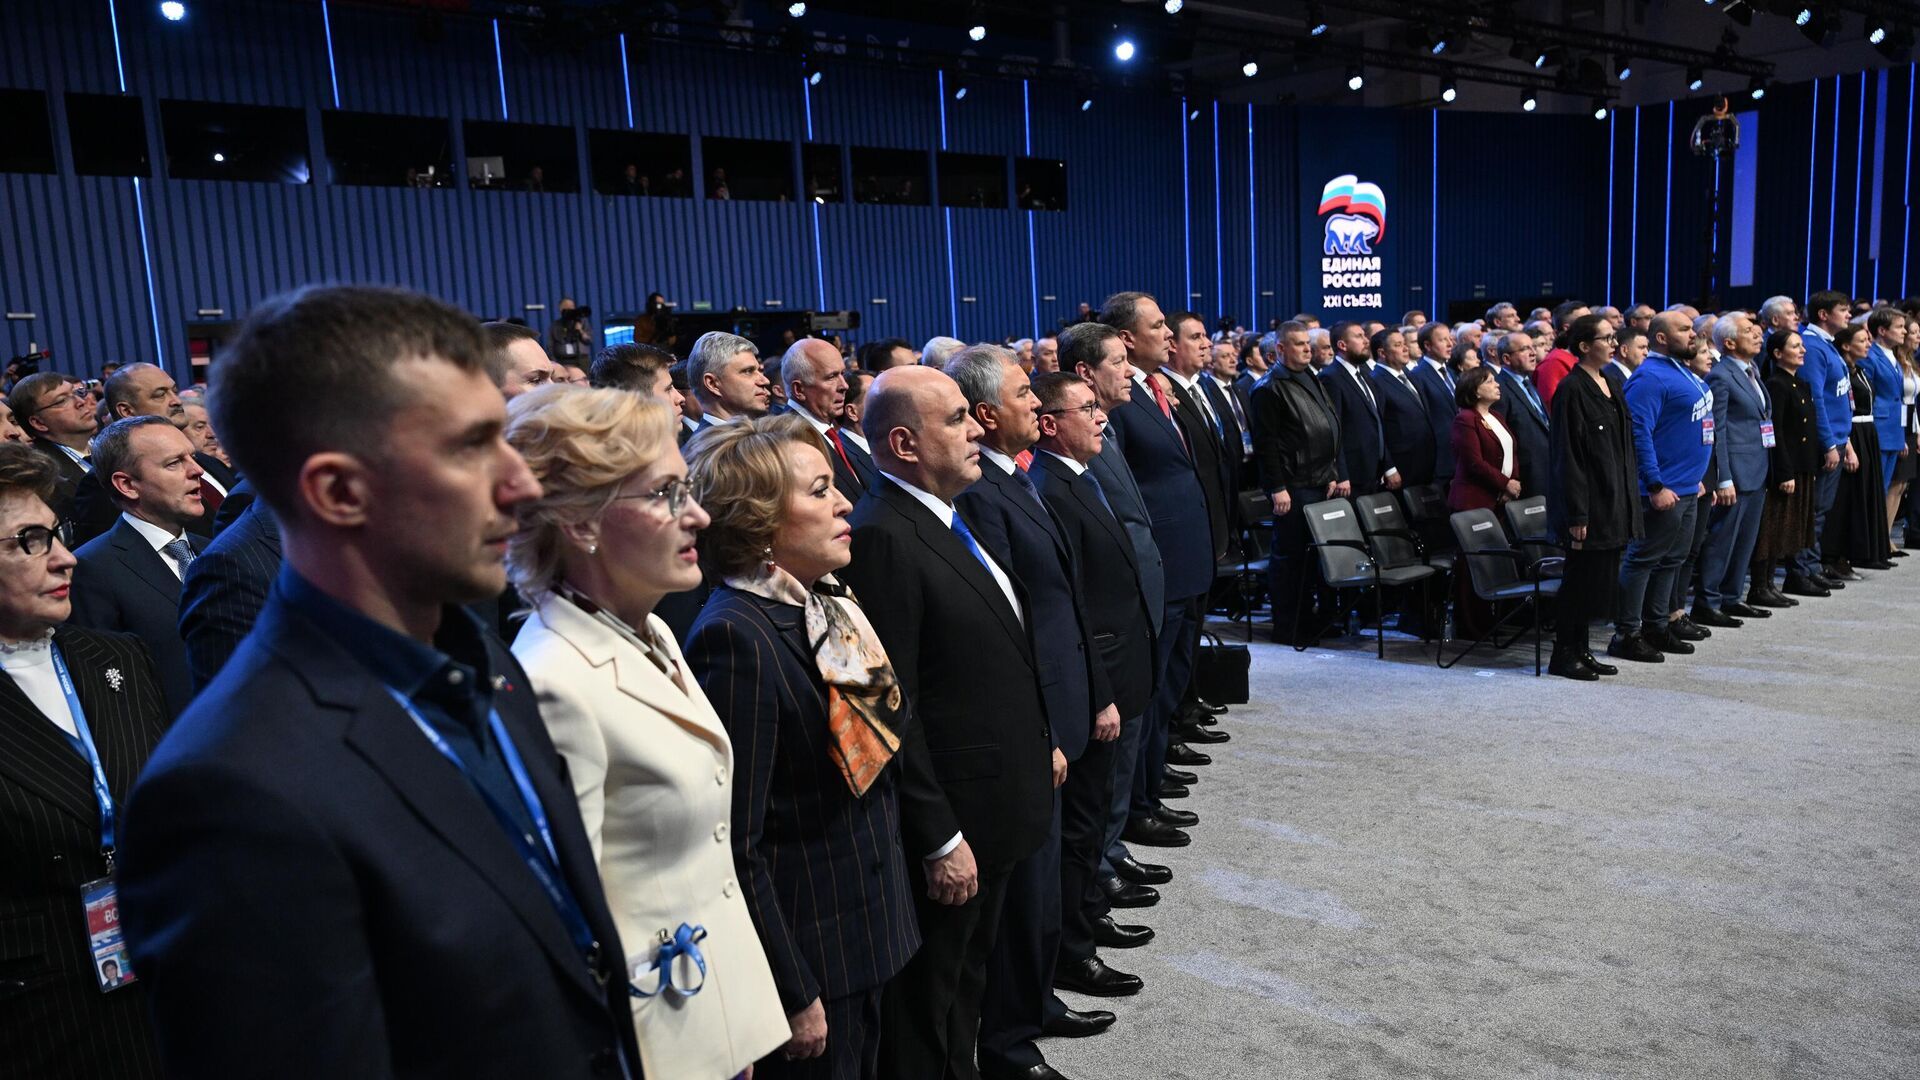 Генеральный совет партии "Единая Россия" обновлен на съезде